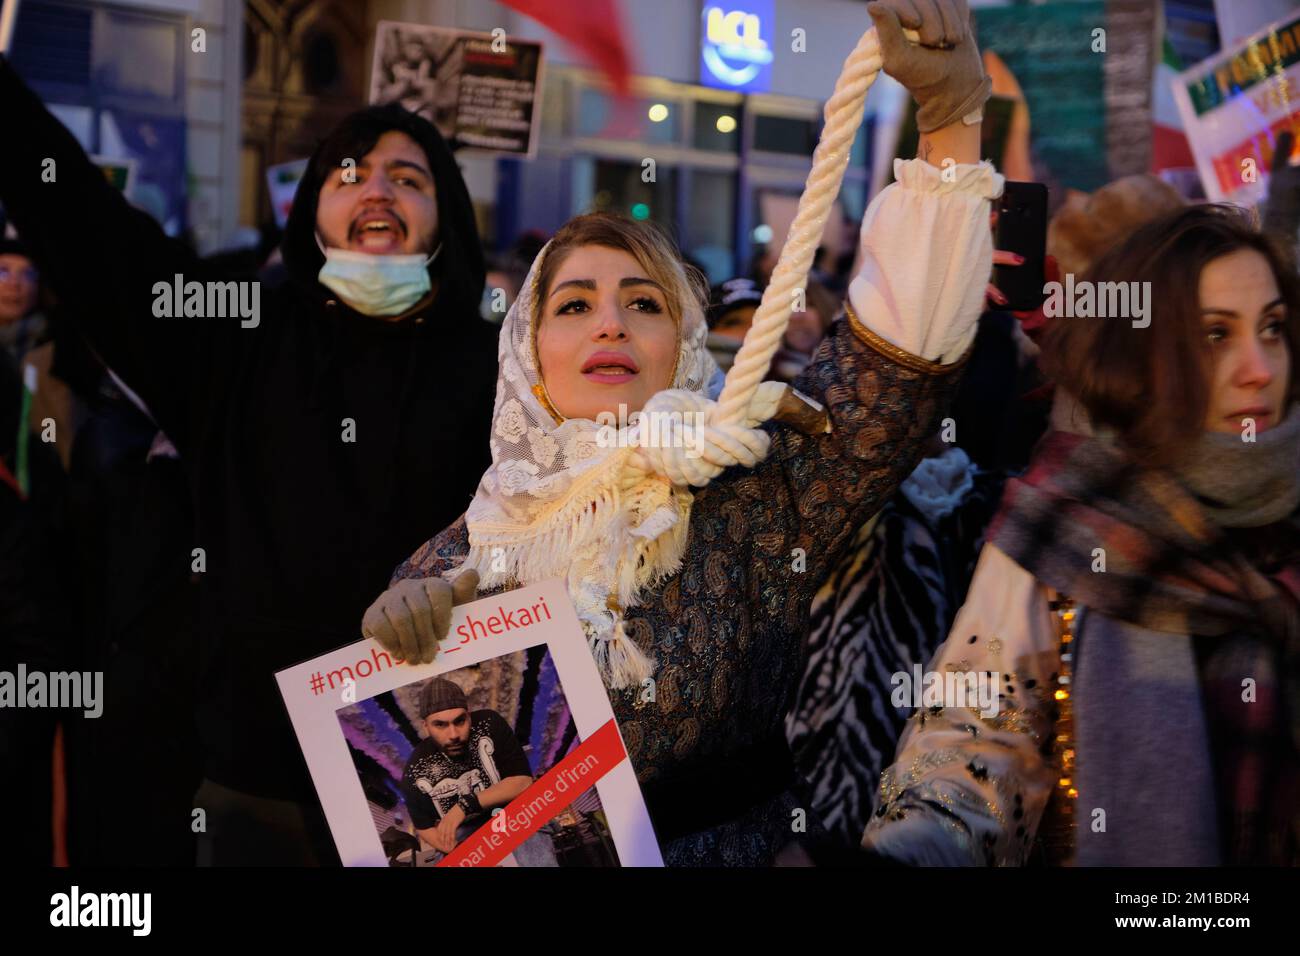 Paris, France. 11th décembre 2022. Une femme tenant un nœud autour de son cou participe à une marche à Paris pour dénoncer le régime islamique en Iran. Mohsen Shekari a été le premier iranien à être executé jeudi, 8 décembre 2022, par le régime iranien de plus en plus répressif, pour avoir participé à des manifestations avec d'autres confrontés à la peine de mort sur des charges similaires. (Credit image: © Remon Haazen/ZUMA Press Wire) Banque D'Images